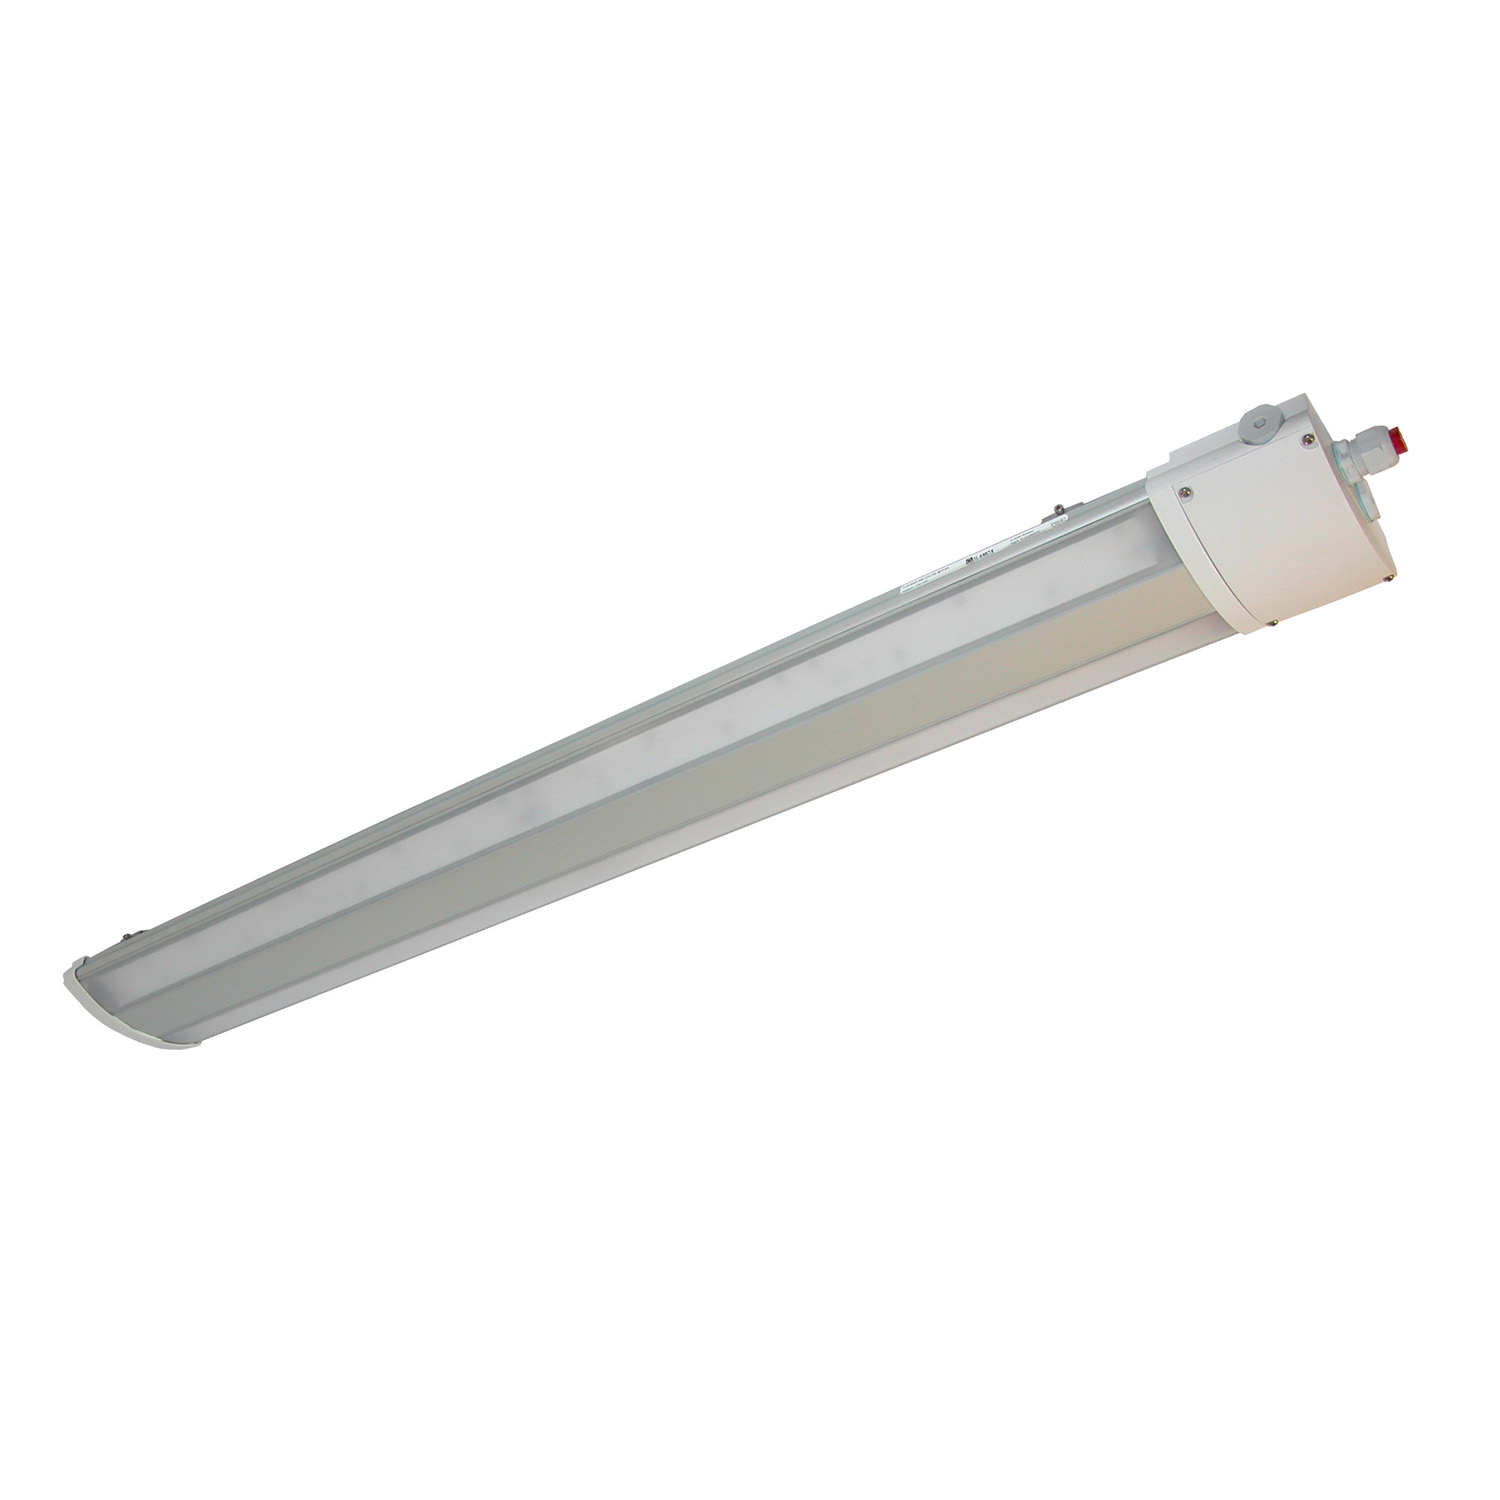 TL50624400 Watertight LED luminaire multipurpose, TL50 4500 840 220-240 M25 AS